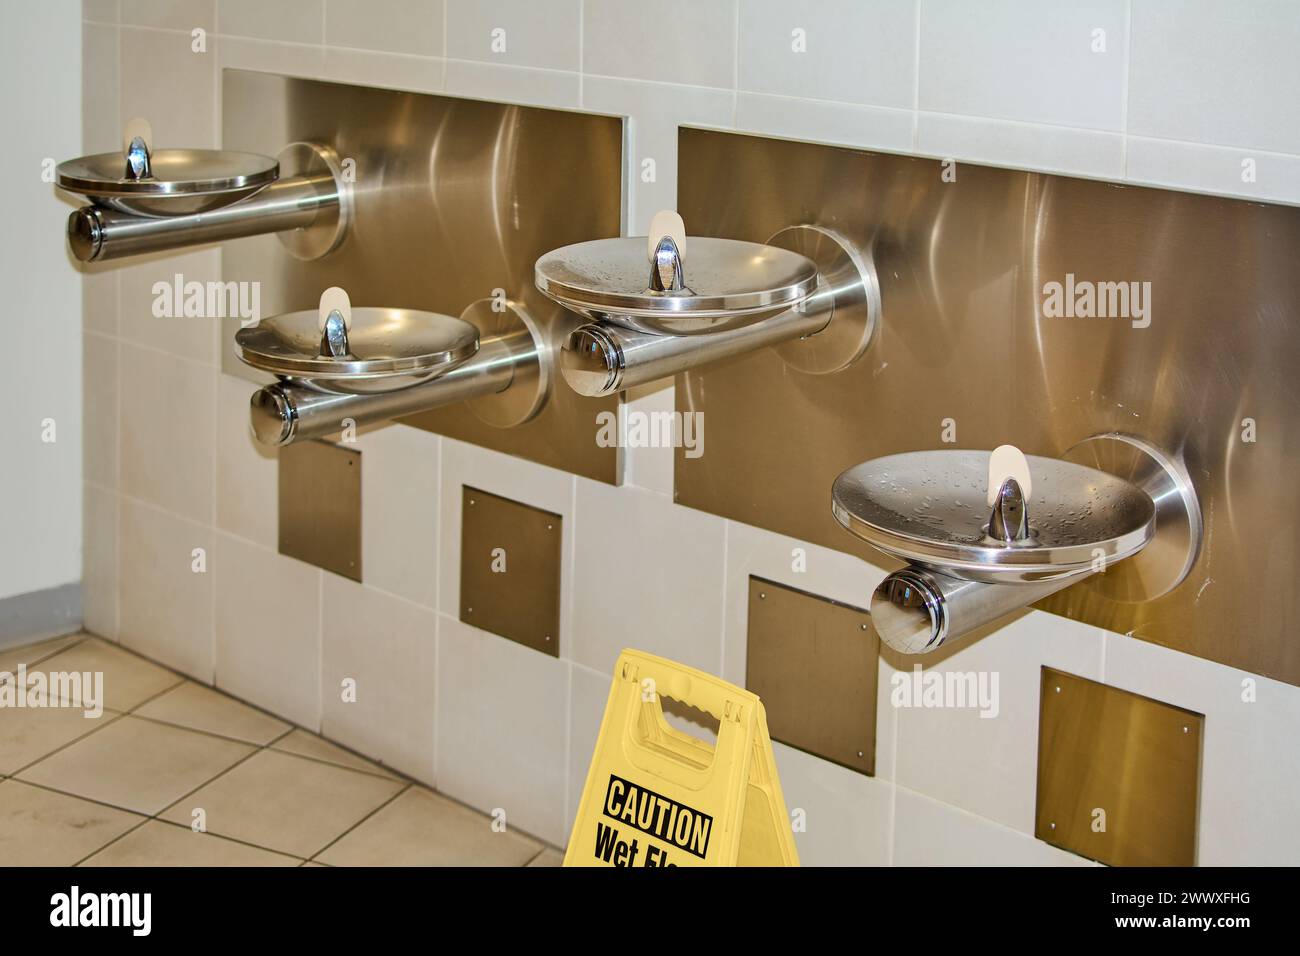 Image montrant un panneau d'avertissement dans une zone avec des fontaines d'eau potable, soulignant l'importance de la sécurité dans les espaces publics. Banque D'Images